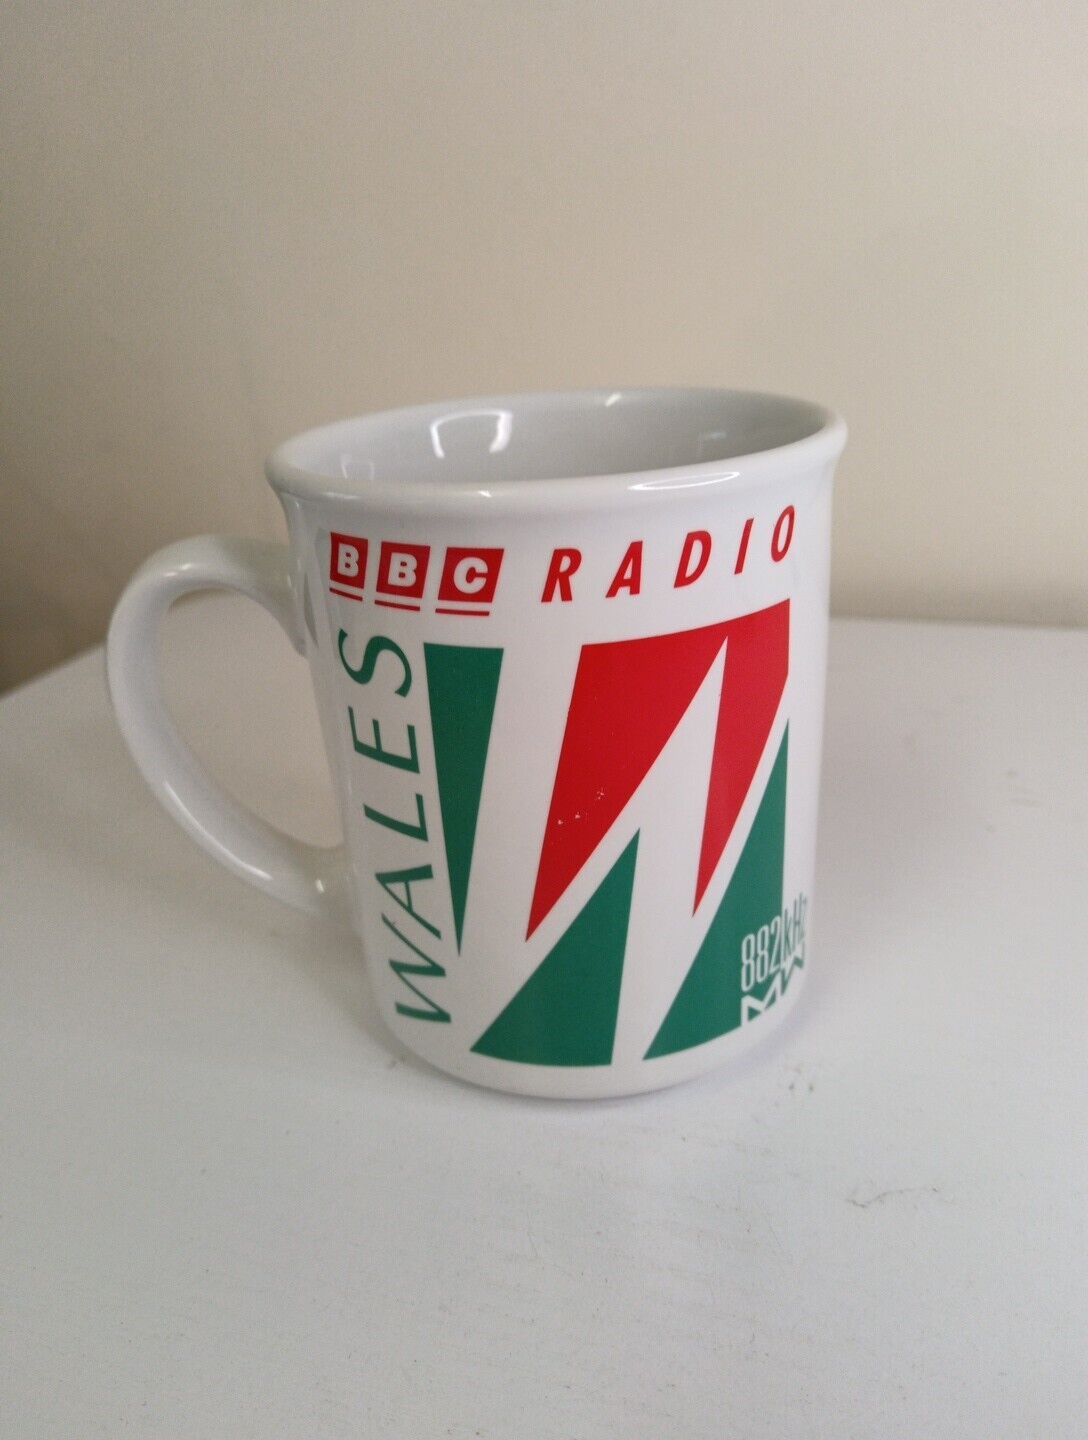 BBC Radio Wales Vintage Mug